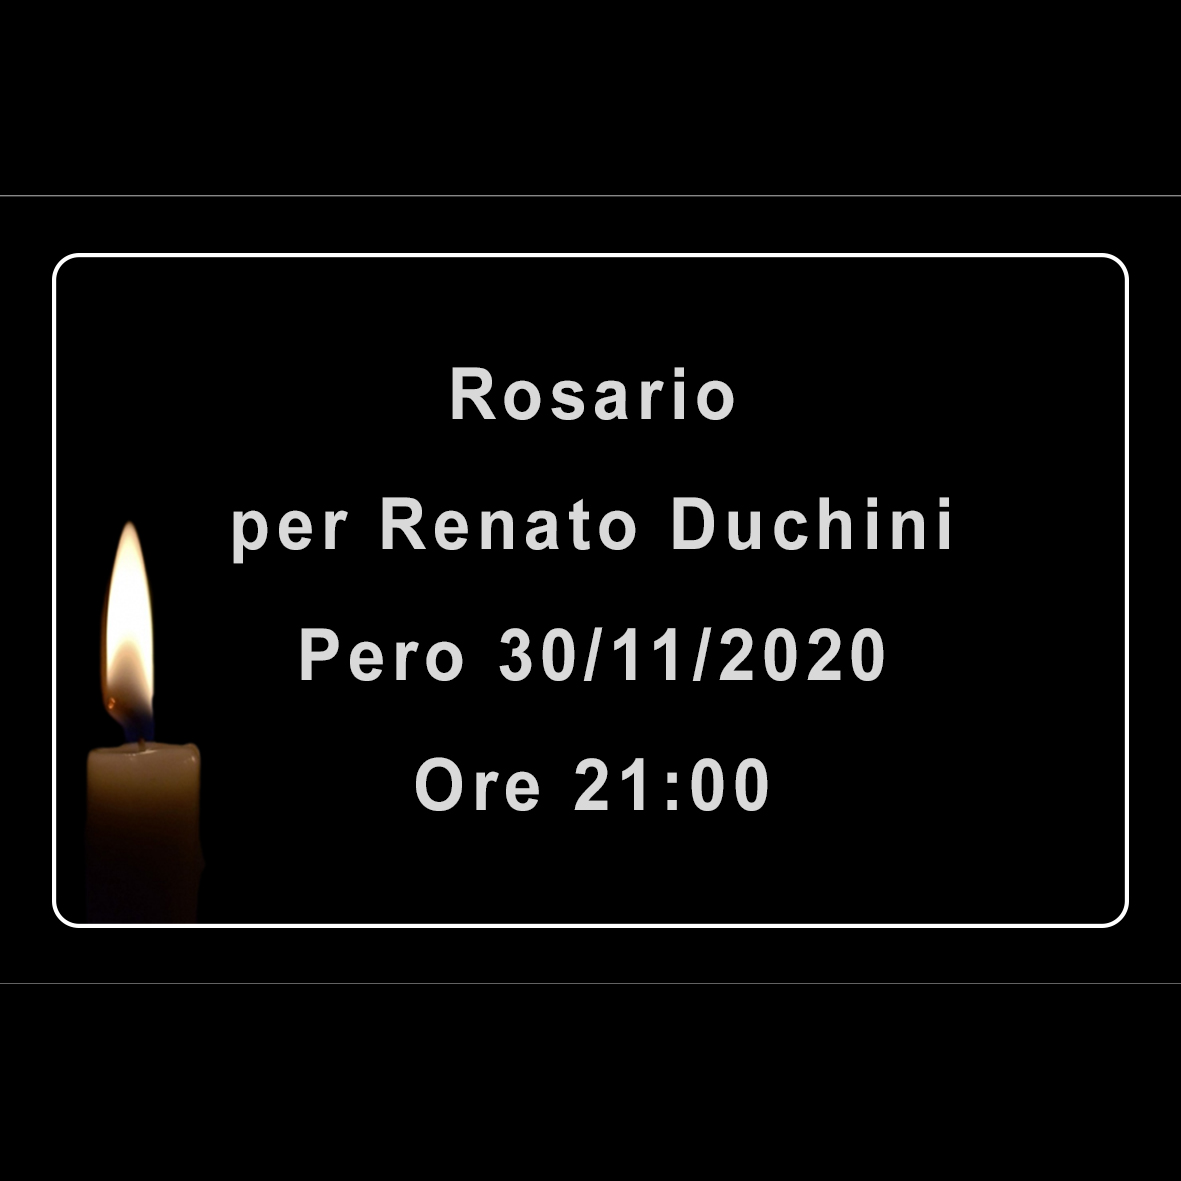 Rosario per Renato Duchini